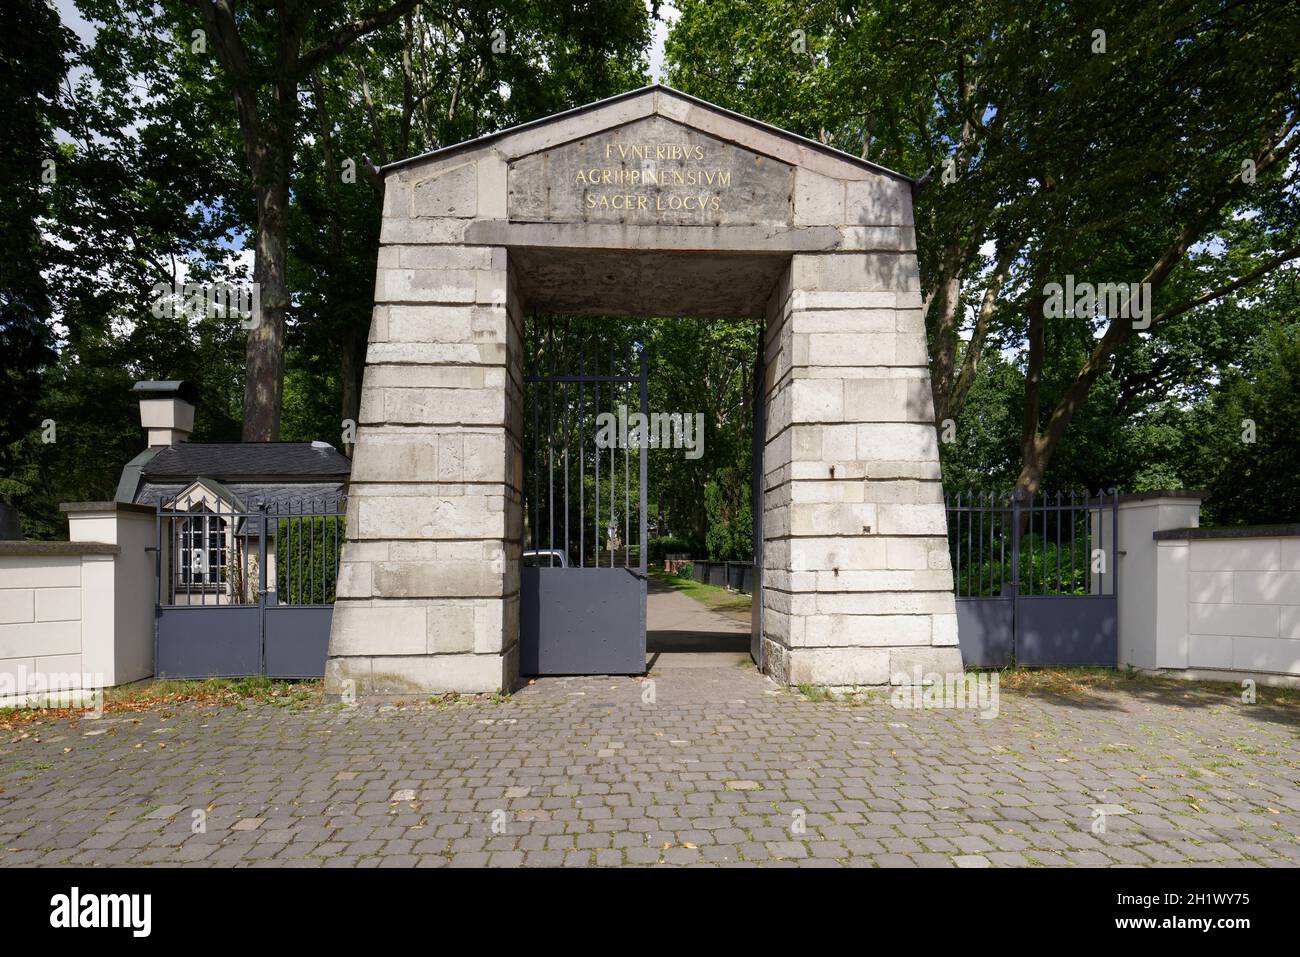 Colonia, Alemania - 10 de agosto de 2021: La puerta monumental de la entrada principal del cementerio de Melaten con la inscripción 'Funeribus Agrippinensium sa Foto de stock